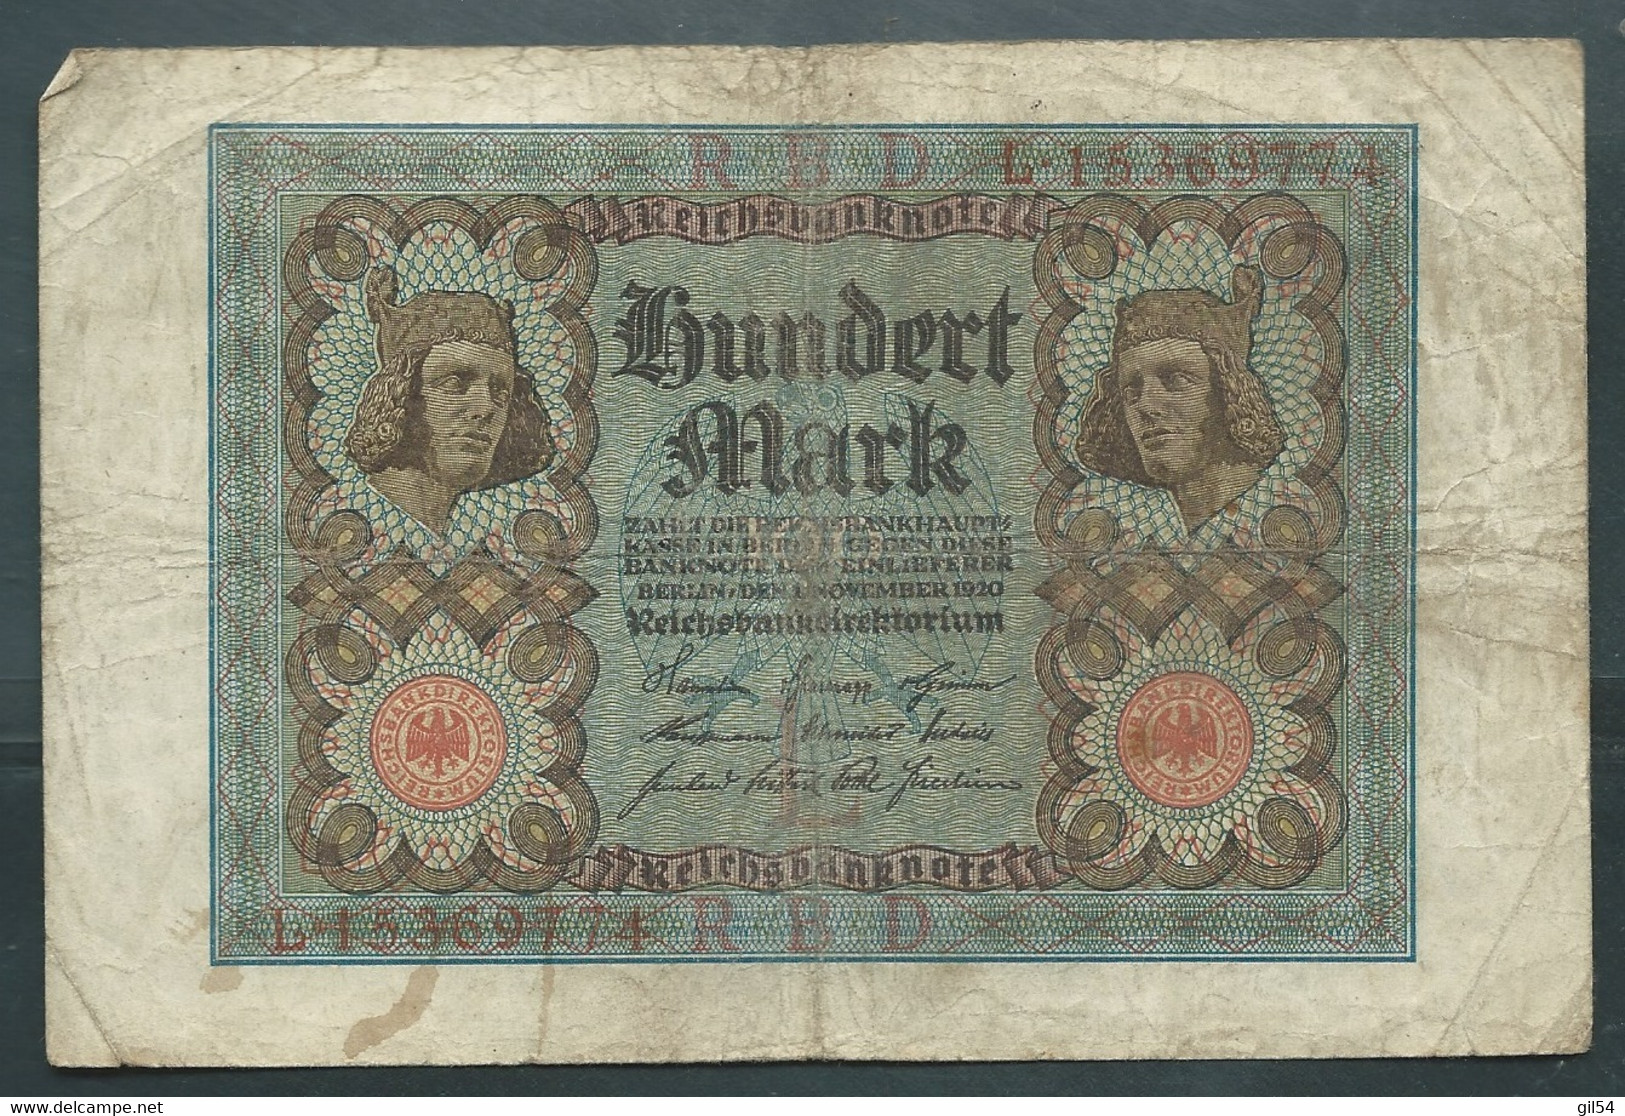 Billet Hundert Mark - Berlin, Den 1 November 1920 - L 15369774 - Laura 8611 - 100 Mark